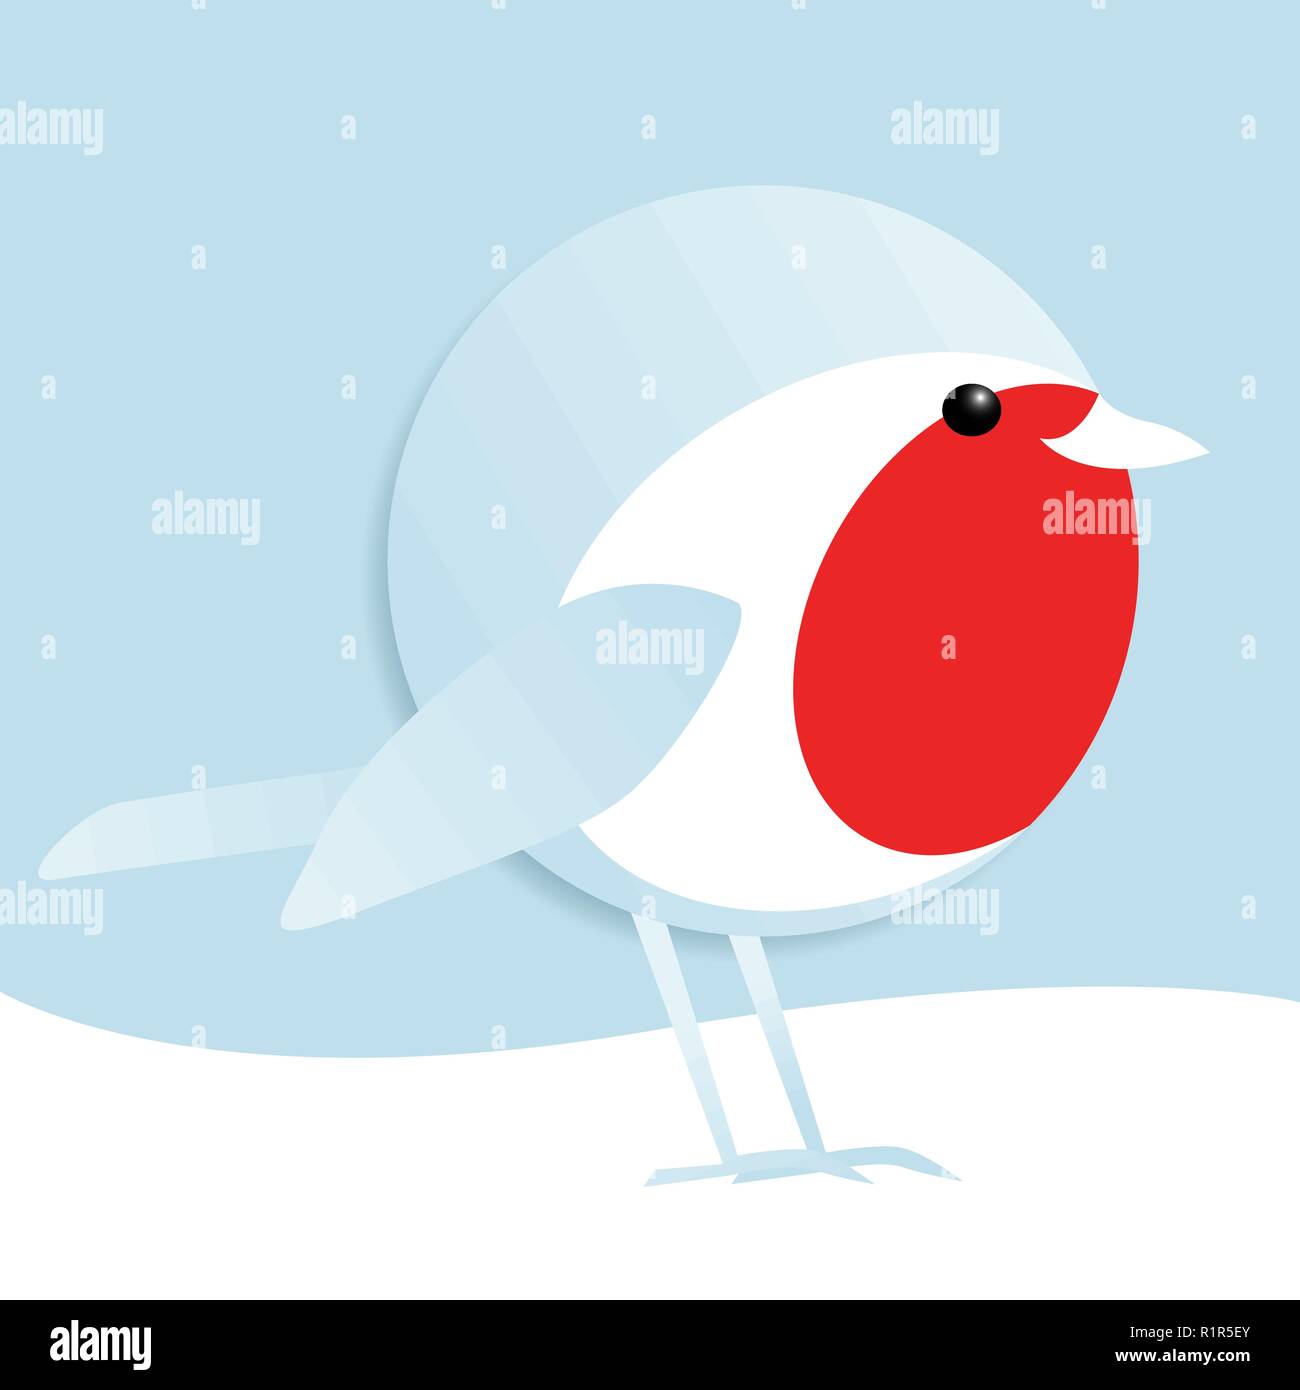 Vector illustration simple d'un homme mignon robin redbreast debout dans la neige Illustration de Vecteur